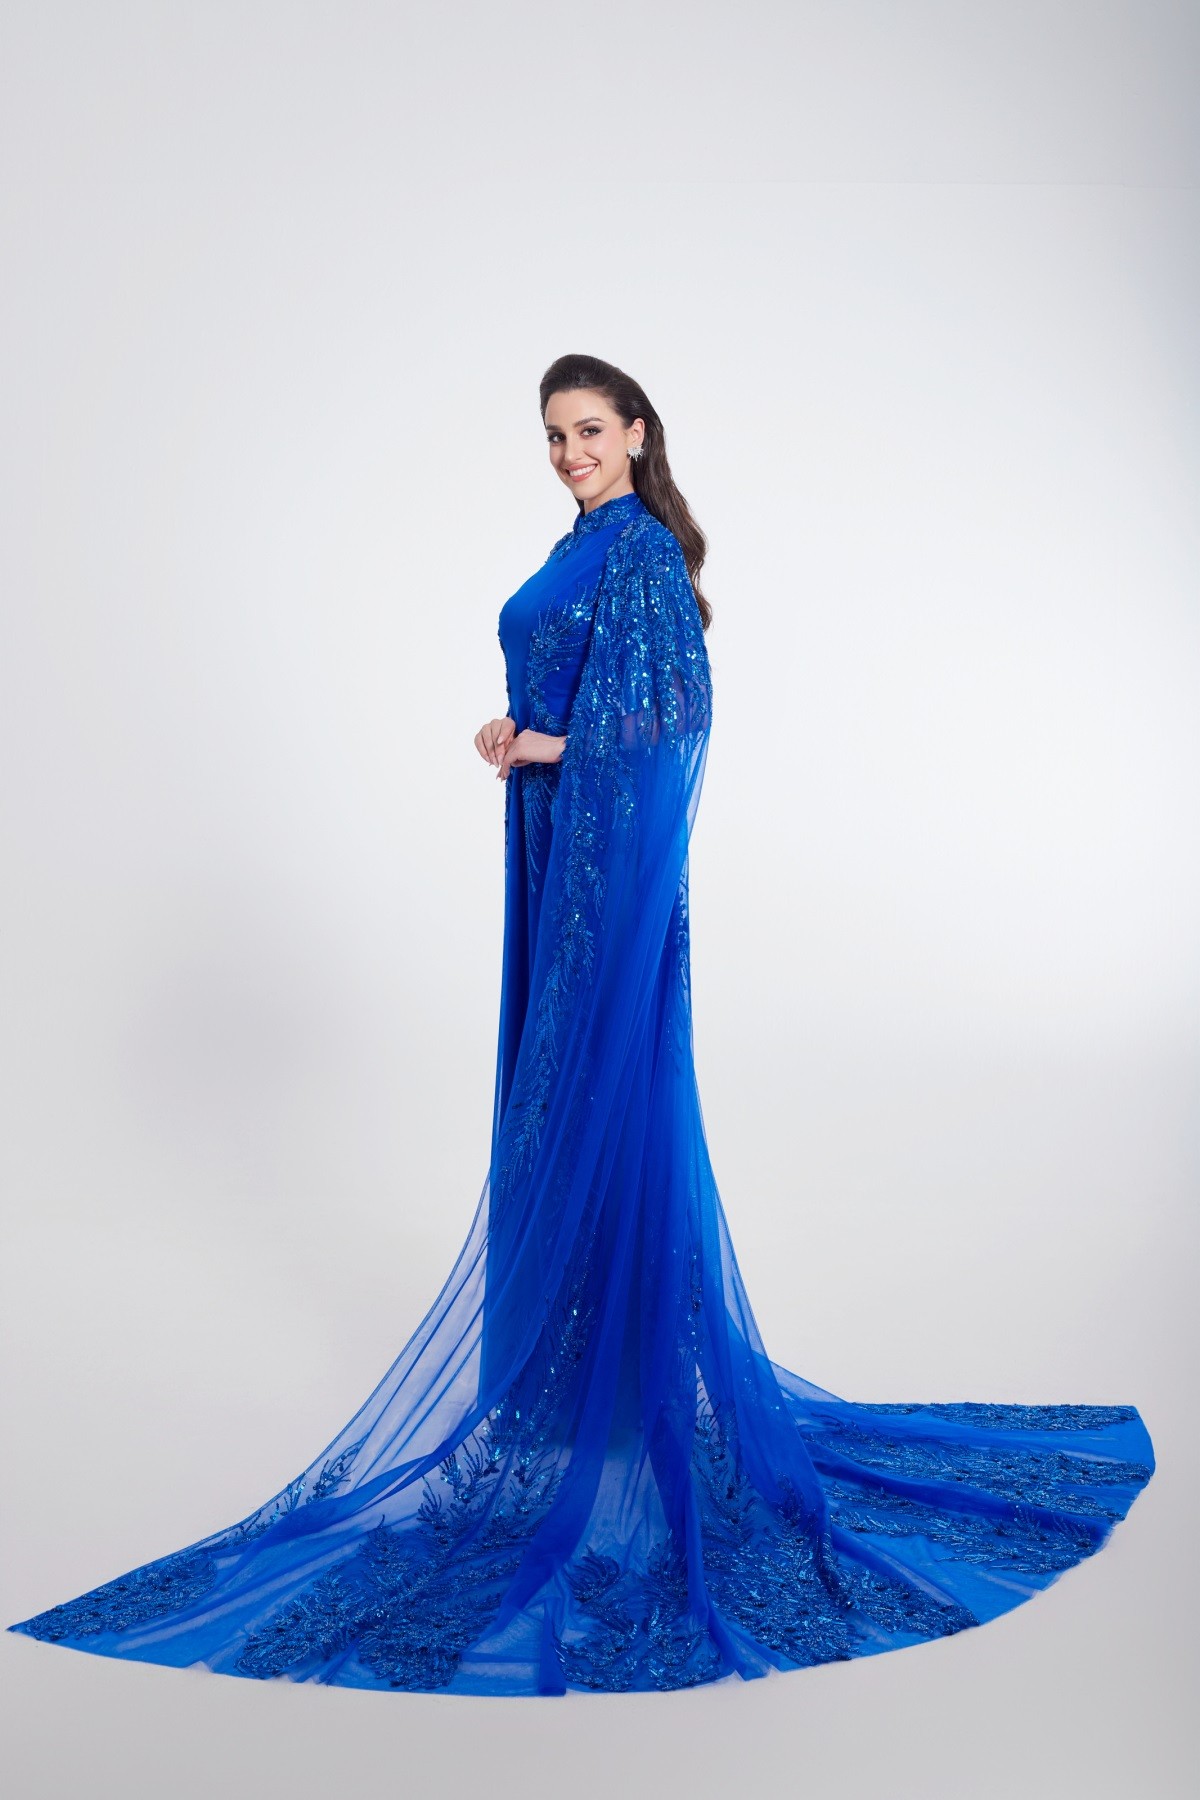 Miss Grand International 2023: Hoa hậu Hòa bình Australia ưu tiên những mẫu đầm của nhà thiết kế Nguyễn Minh Tuấn